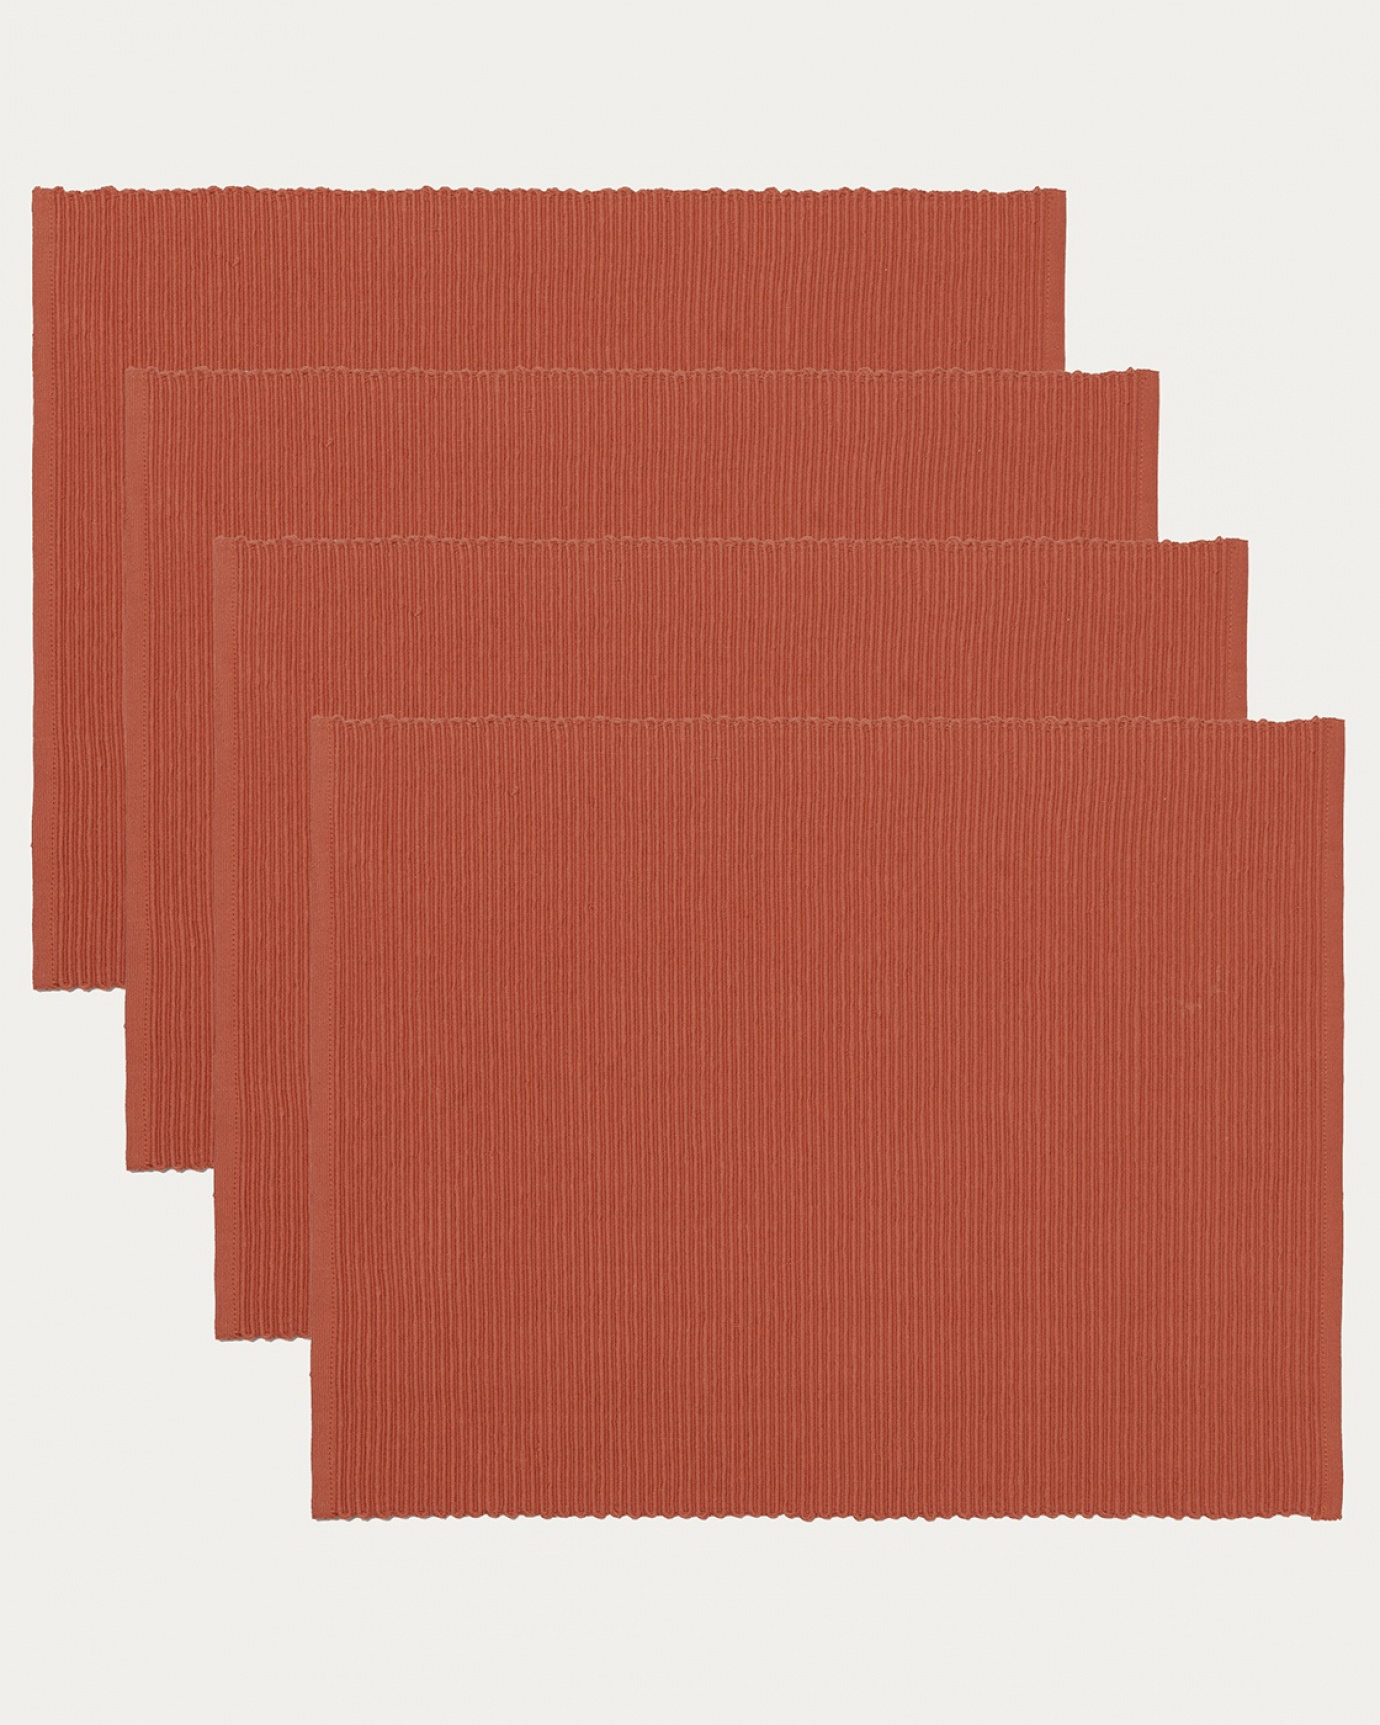 Immagine prodotto arancio arrugginito tovaglietta UNI in morbido cotone a costine di qualità di LINUM DESIGN. Dimensioni 35x46 cm e venduto in 4-pezzi.